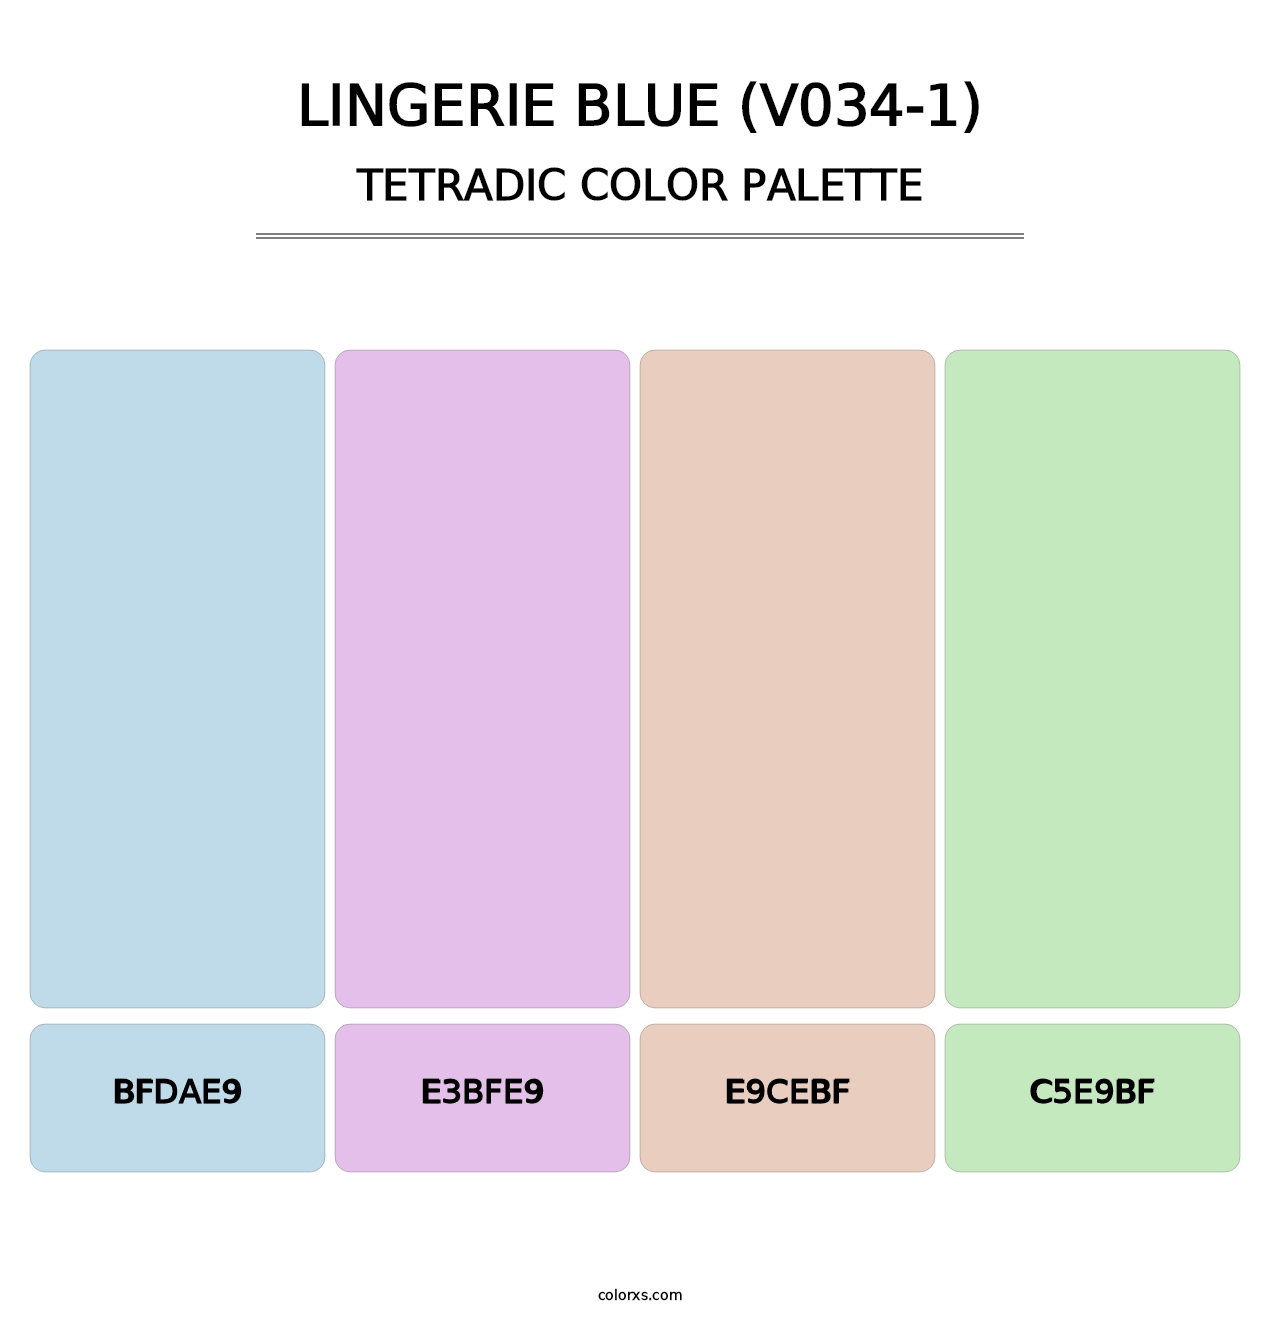 Lingerie Blue (V034-1) - Tetradic Color Palette